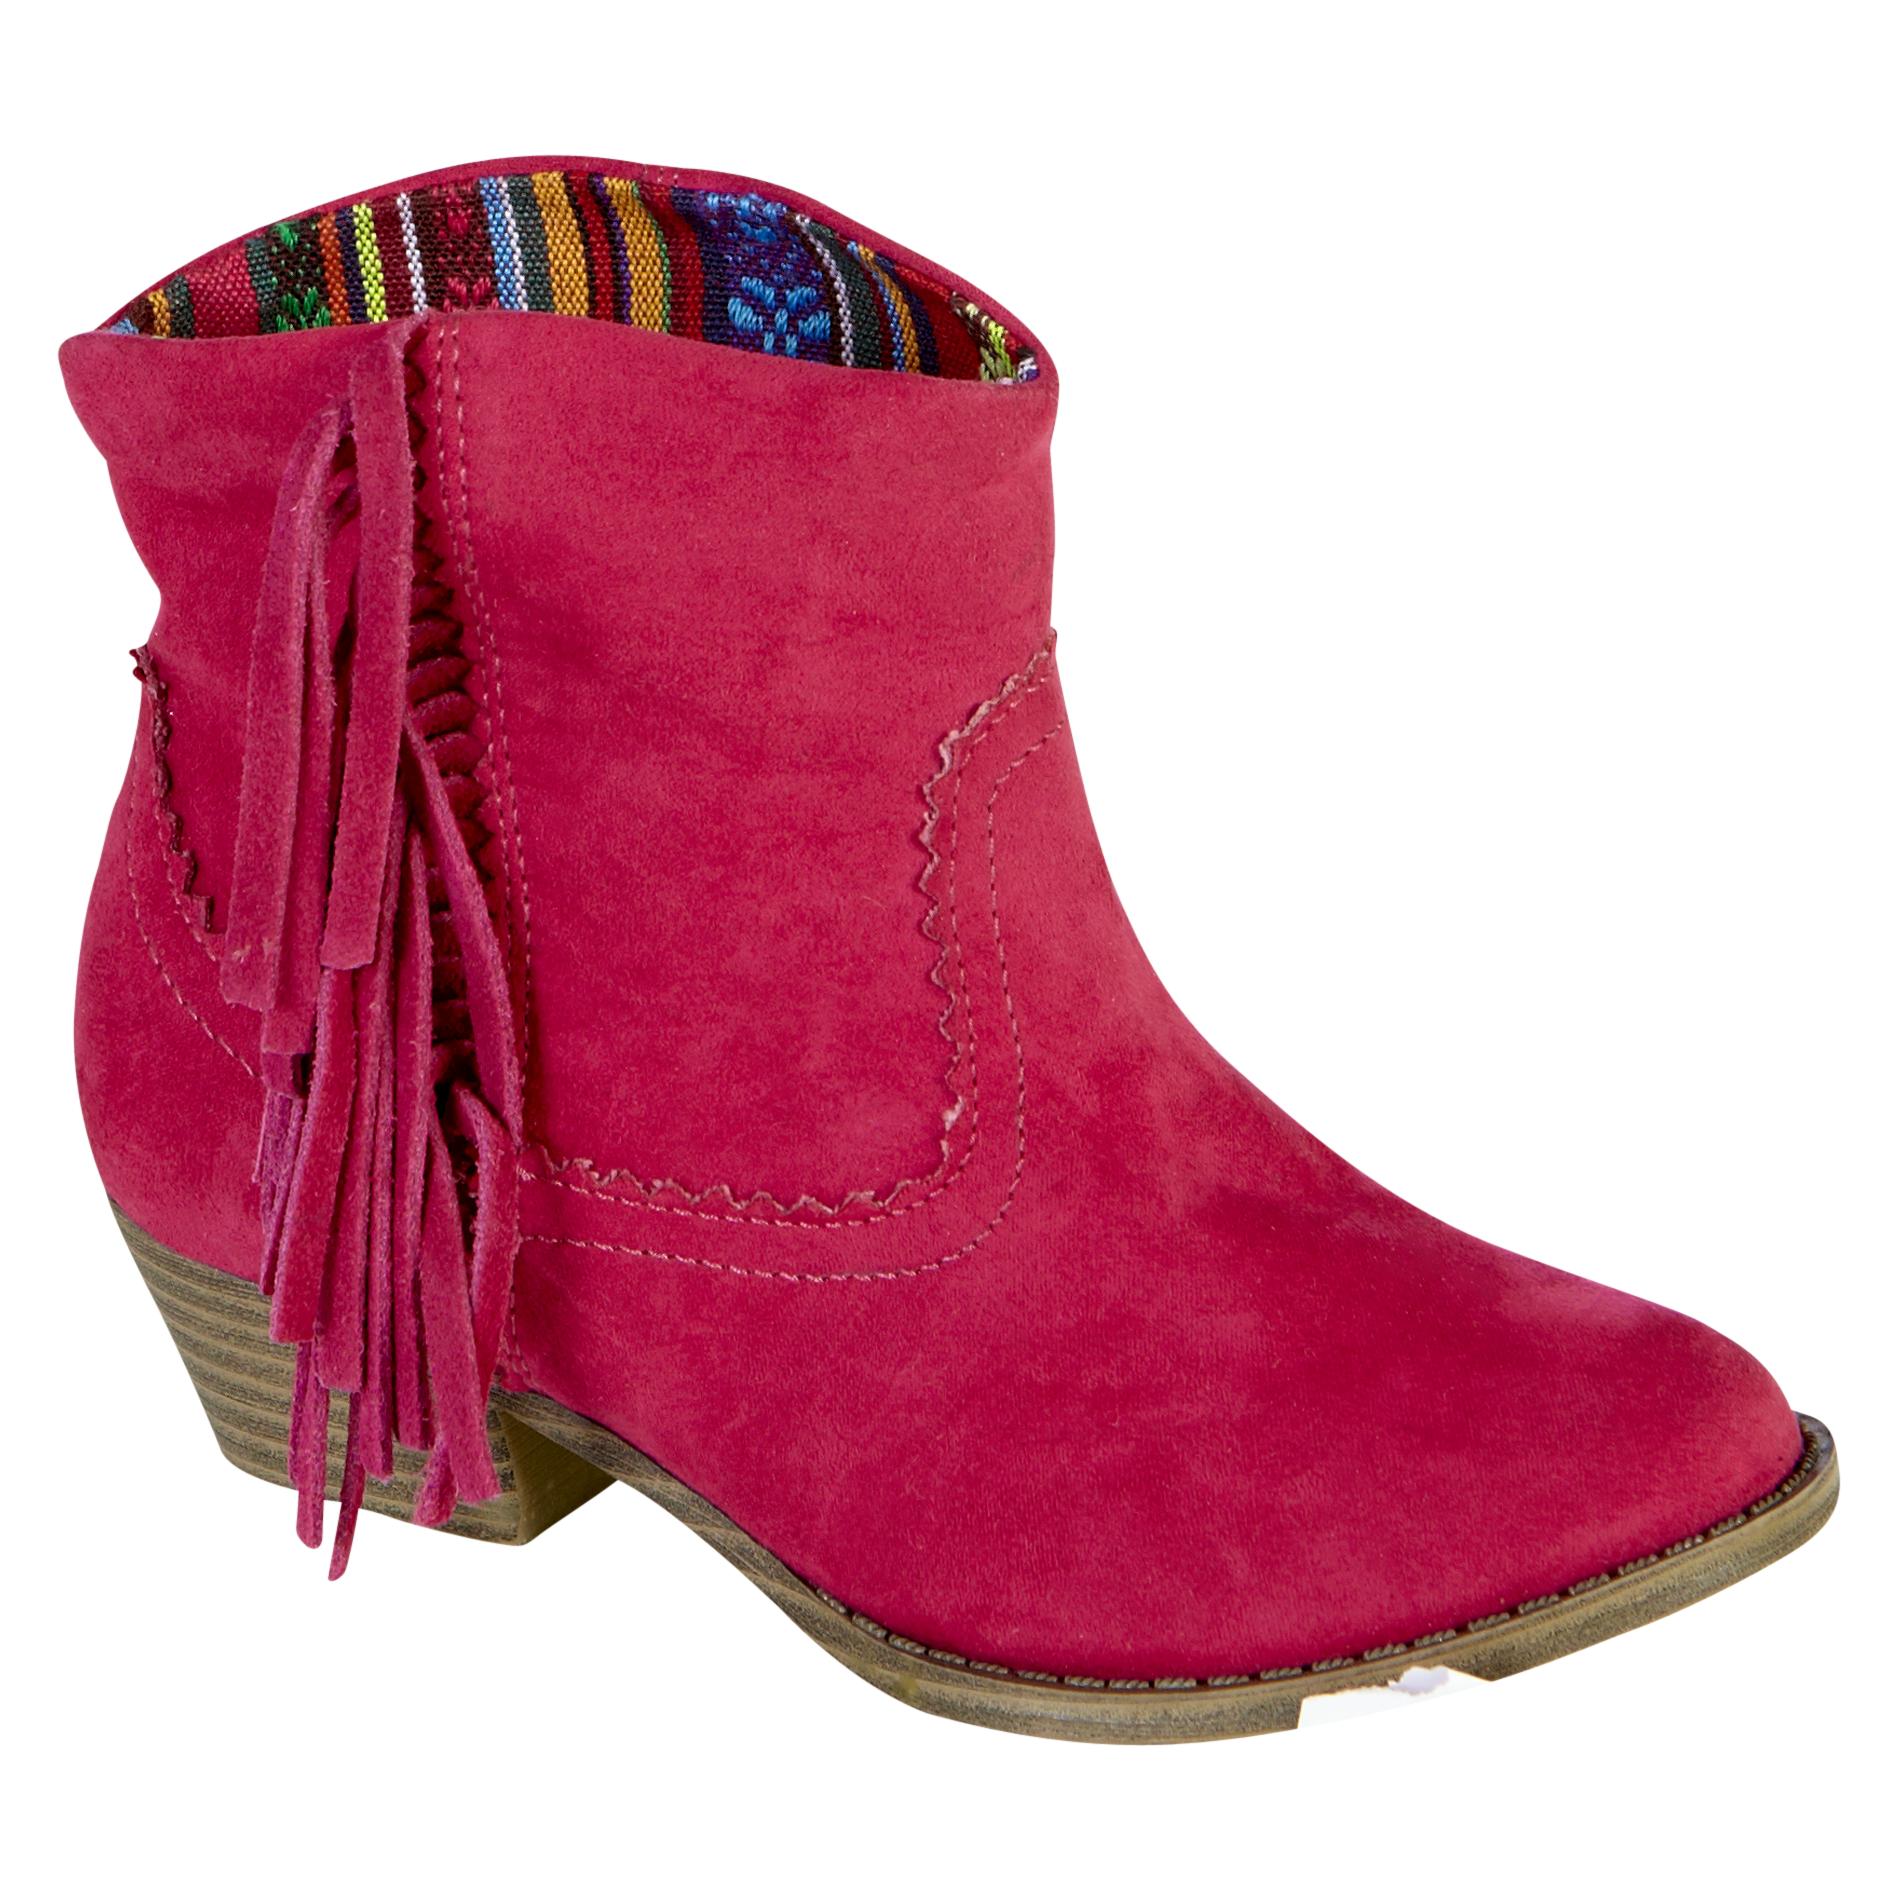 Mia Toddler Girl's Fashion Western Boot  Lil Blake - Pink